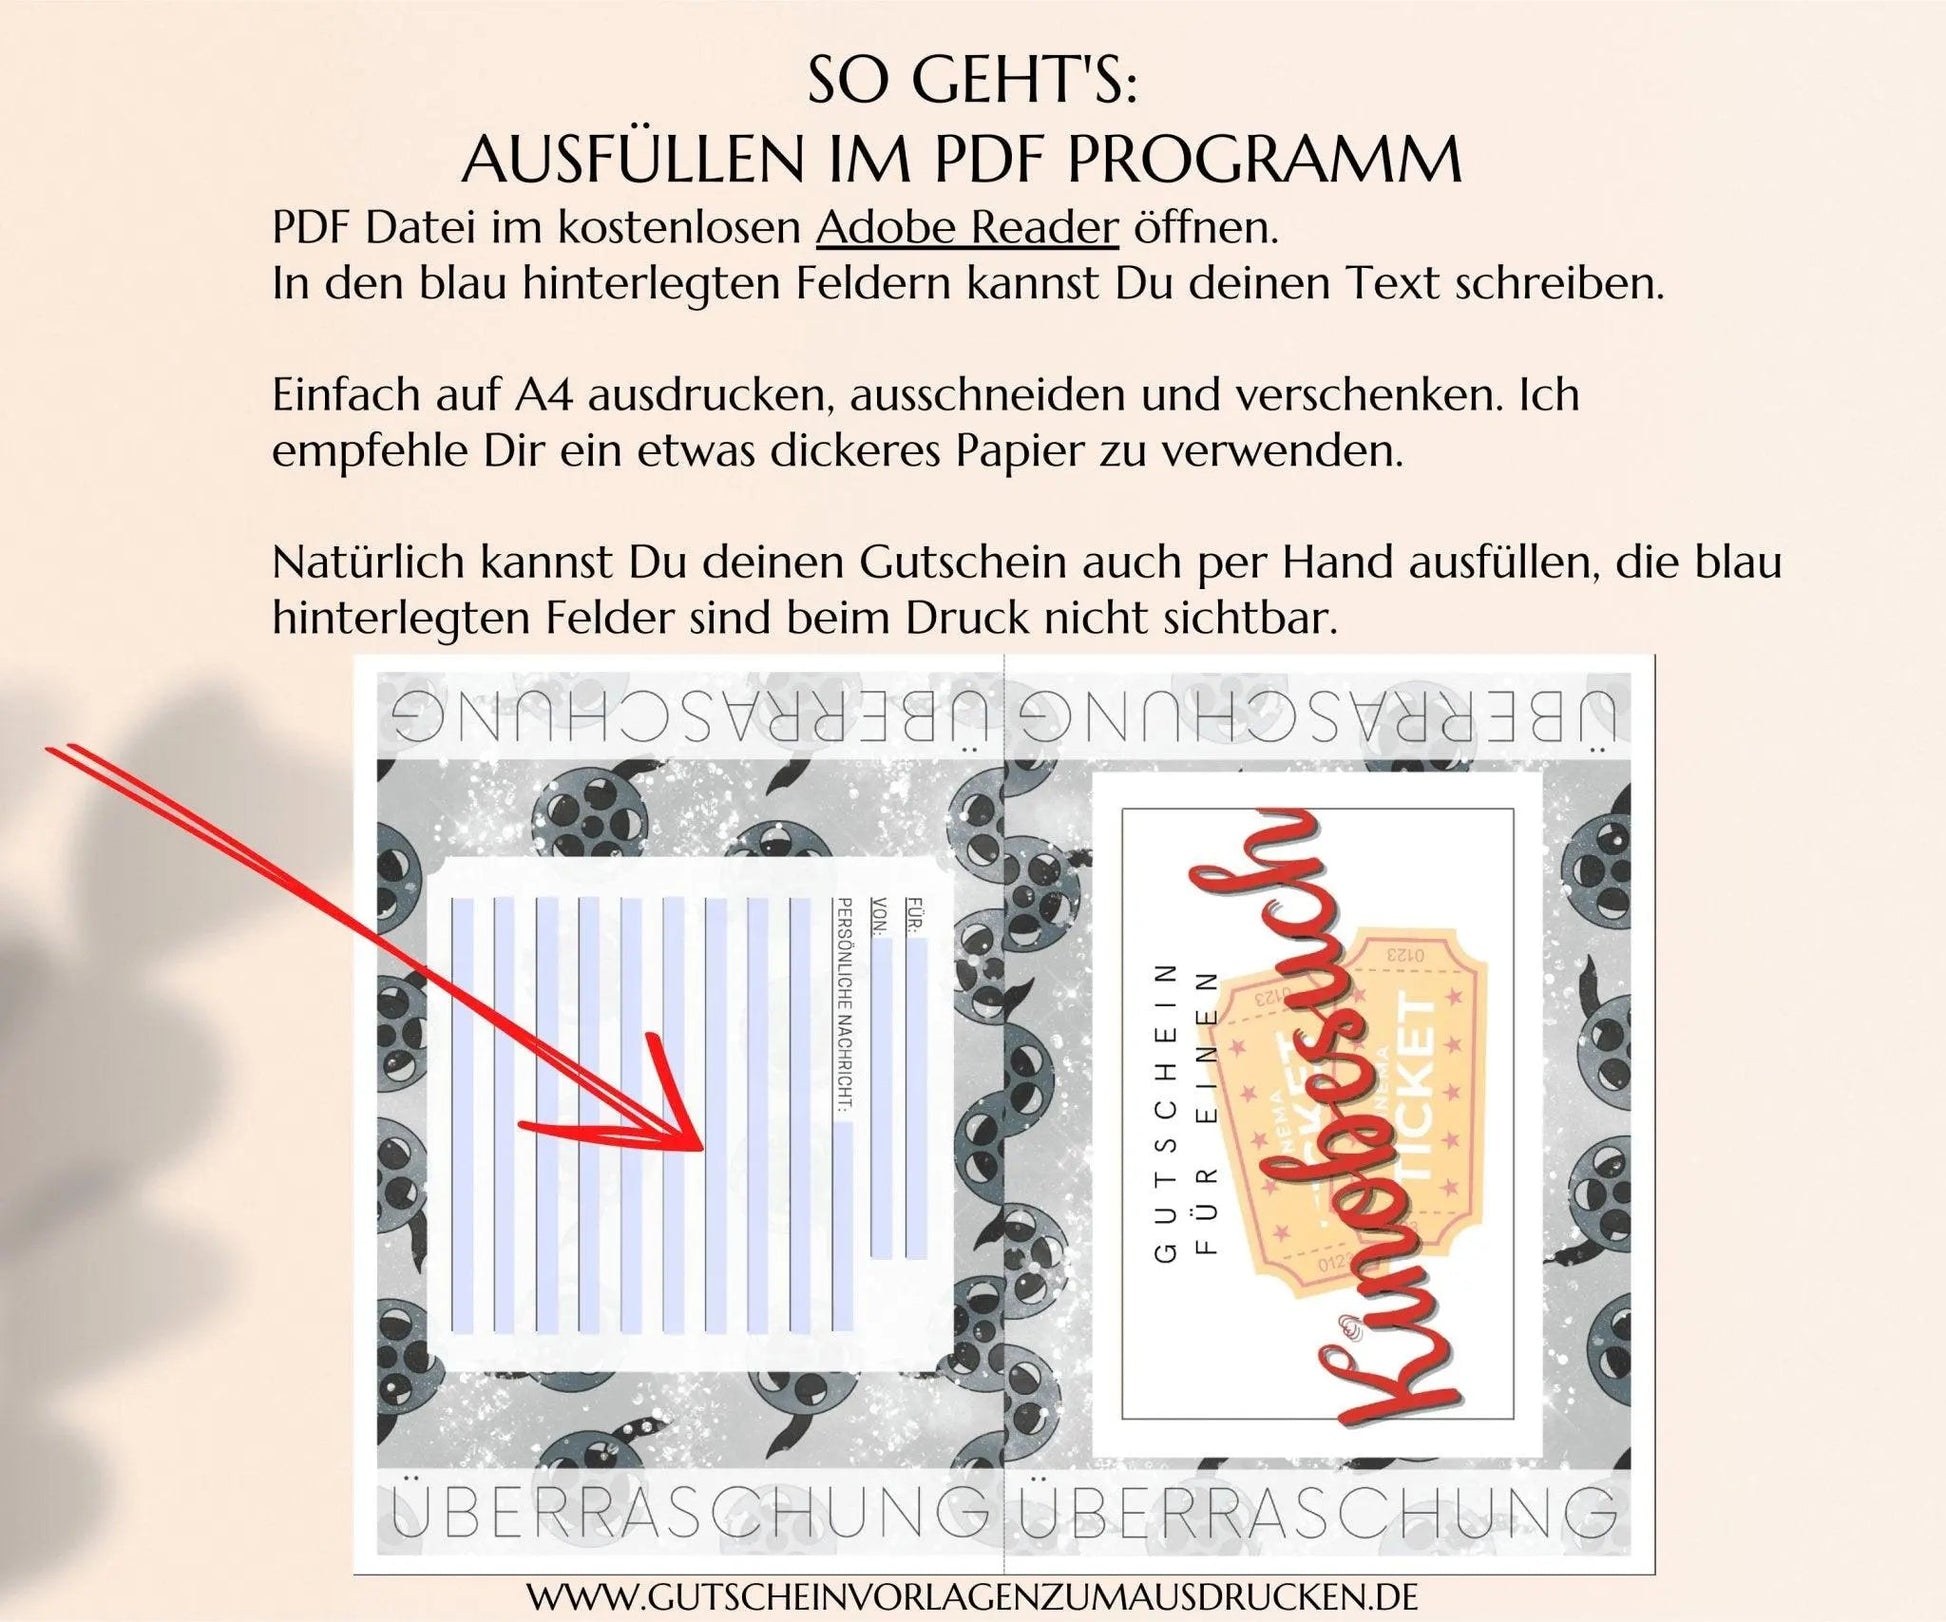 Kinobesuch Gutschein Vorlage zum Ausdrucken | JSK260 - JSKDesignStudio.de